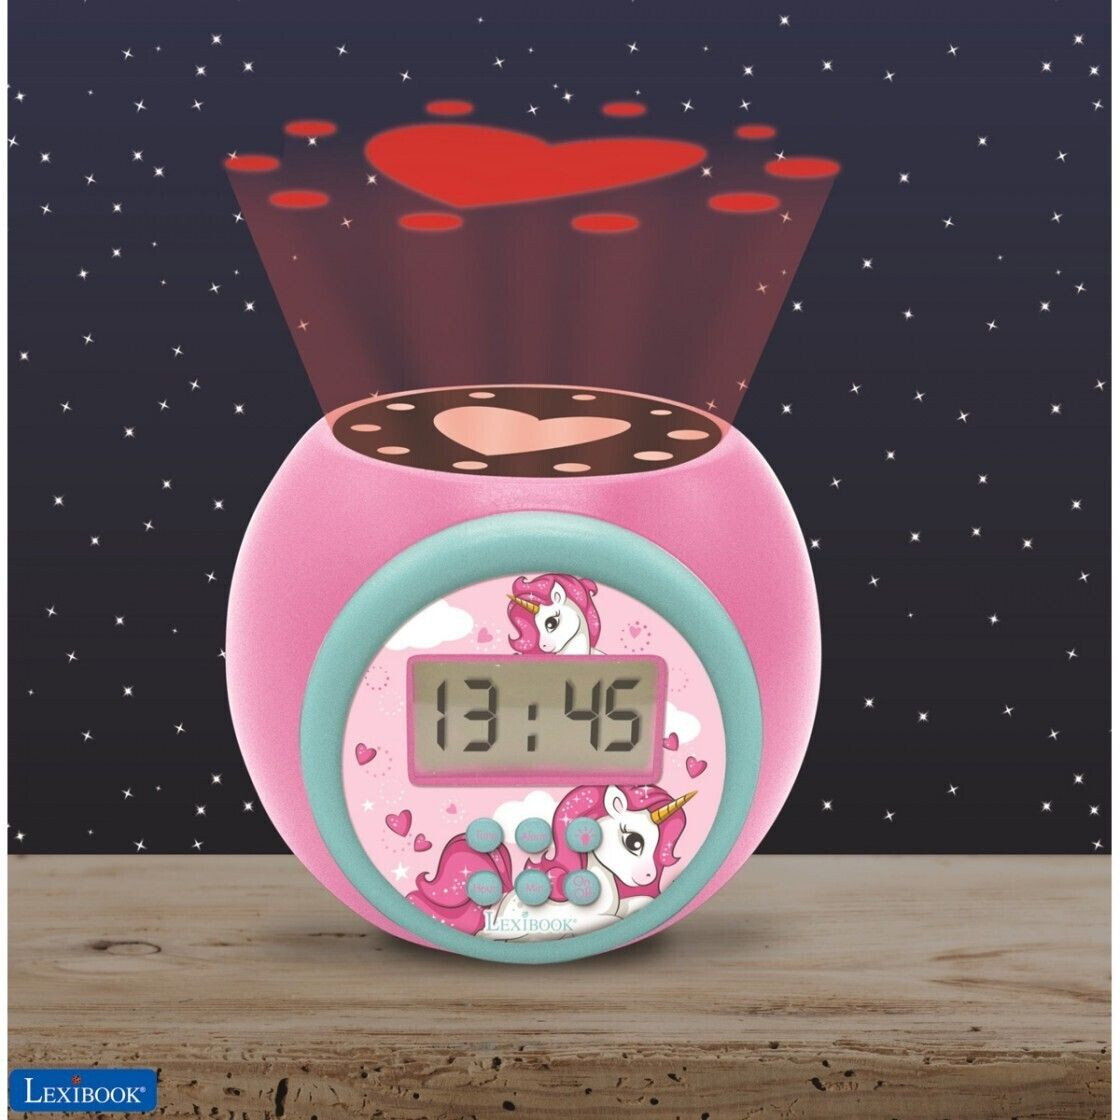 despertador infantil,Reloj despertador de unicornio rosa para